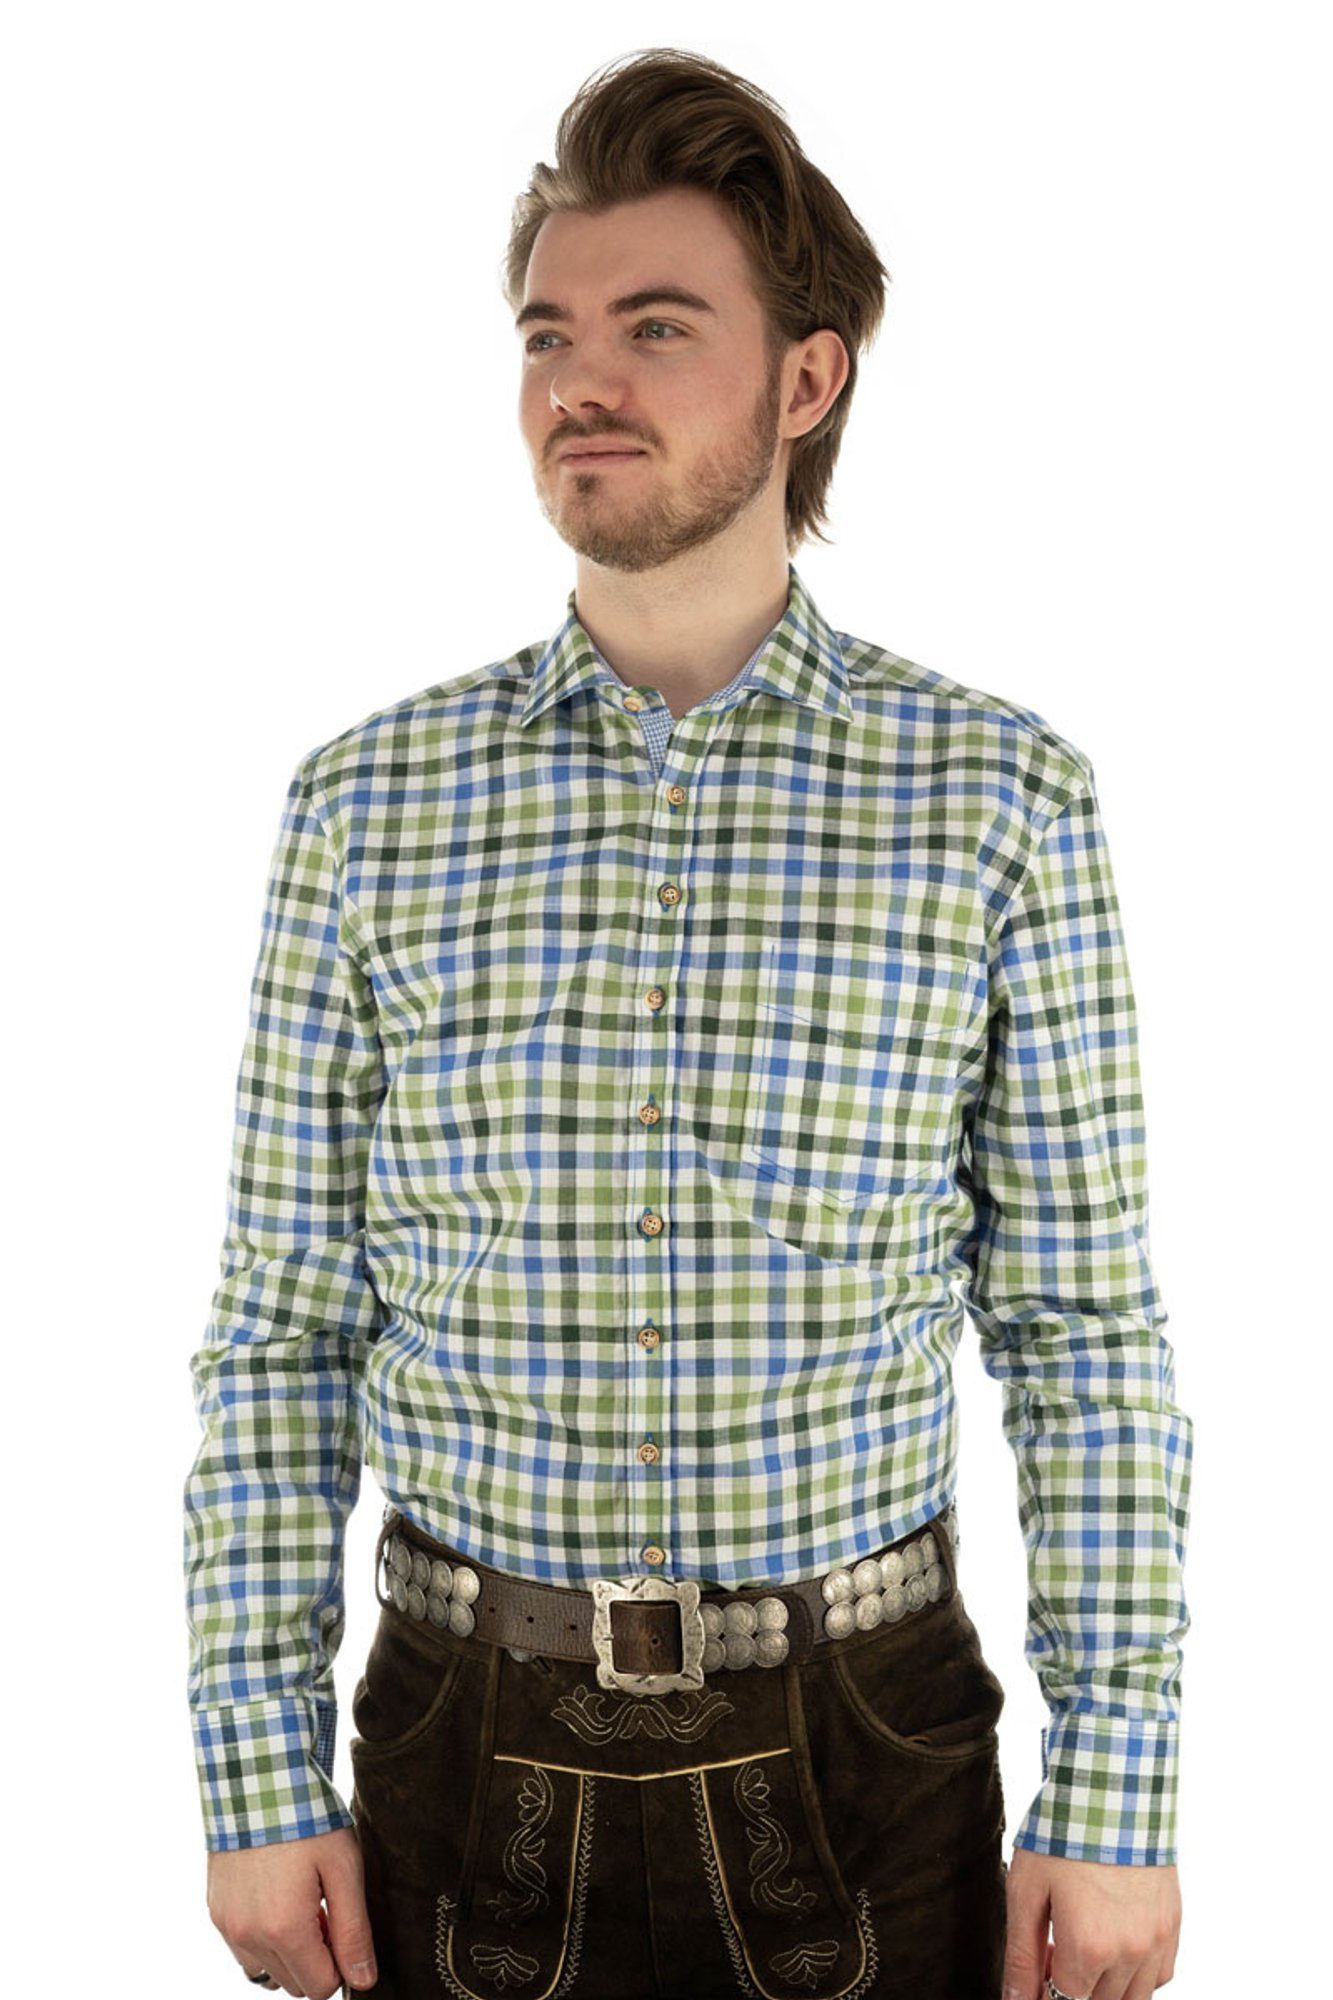 und Trachtenhemd Kragen in Manschette trachtengrün Langarmhemd OS-Trachten Junra Kontraststoff im mit der